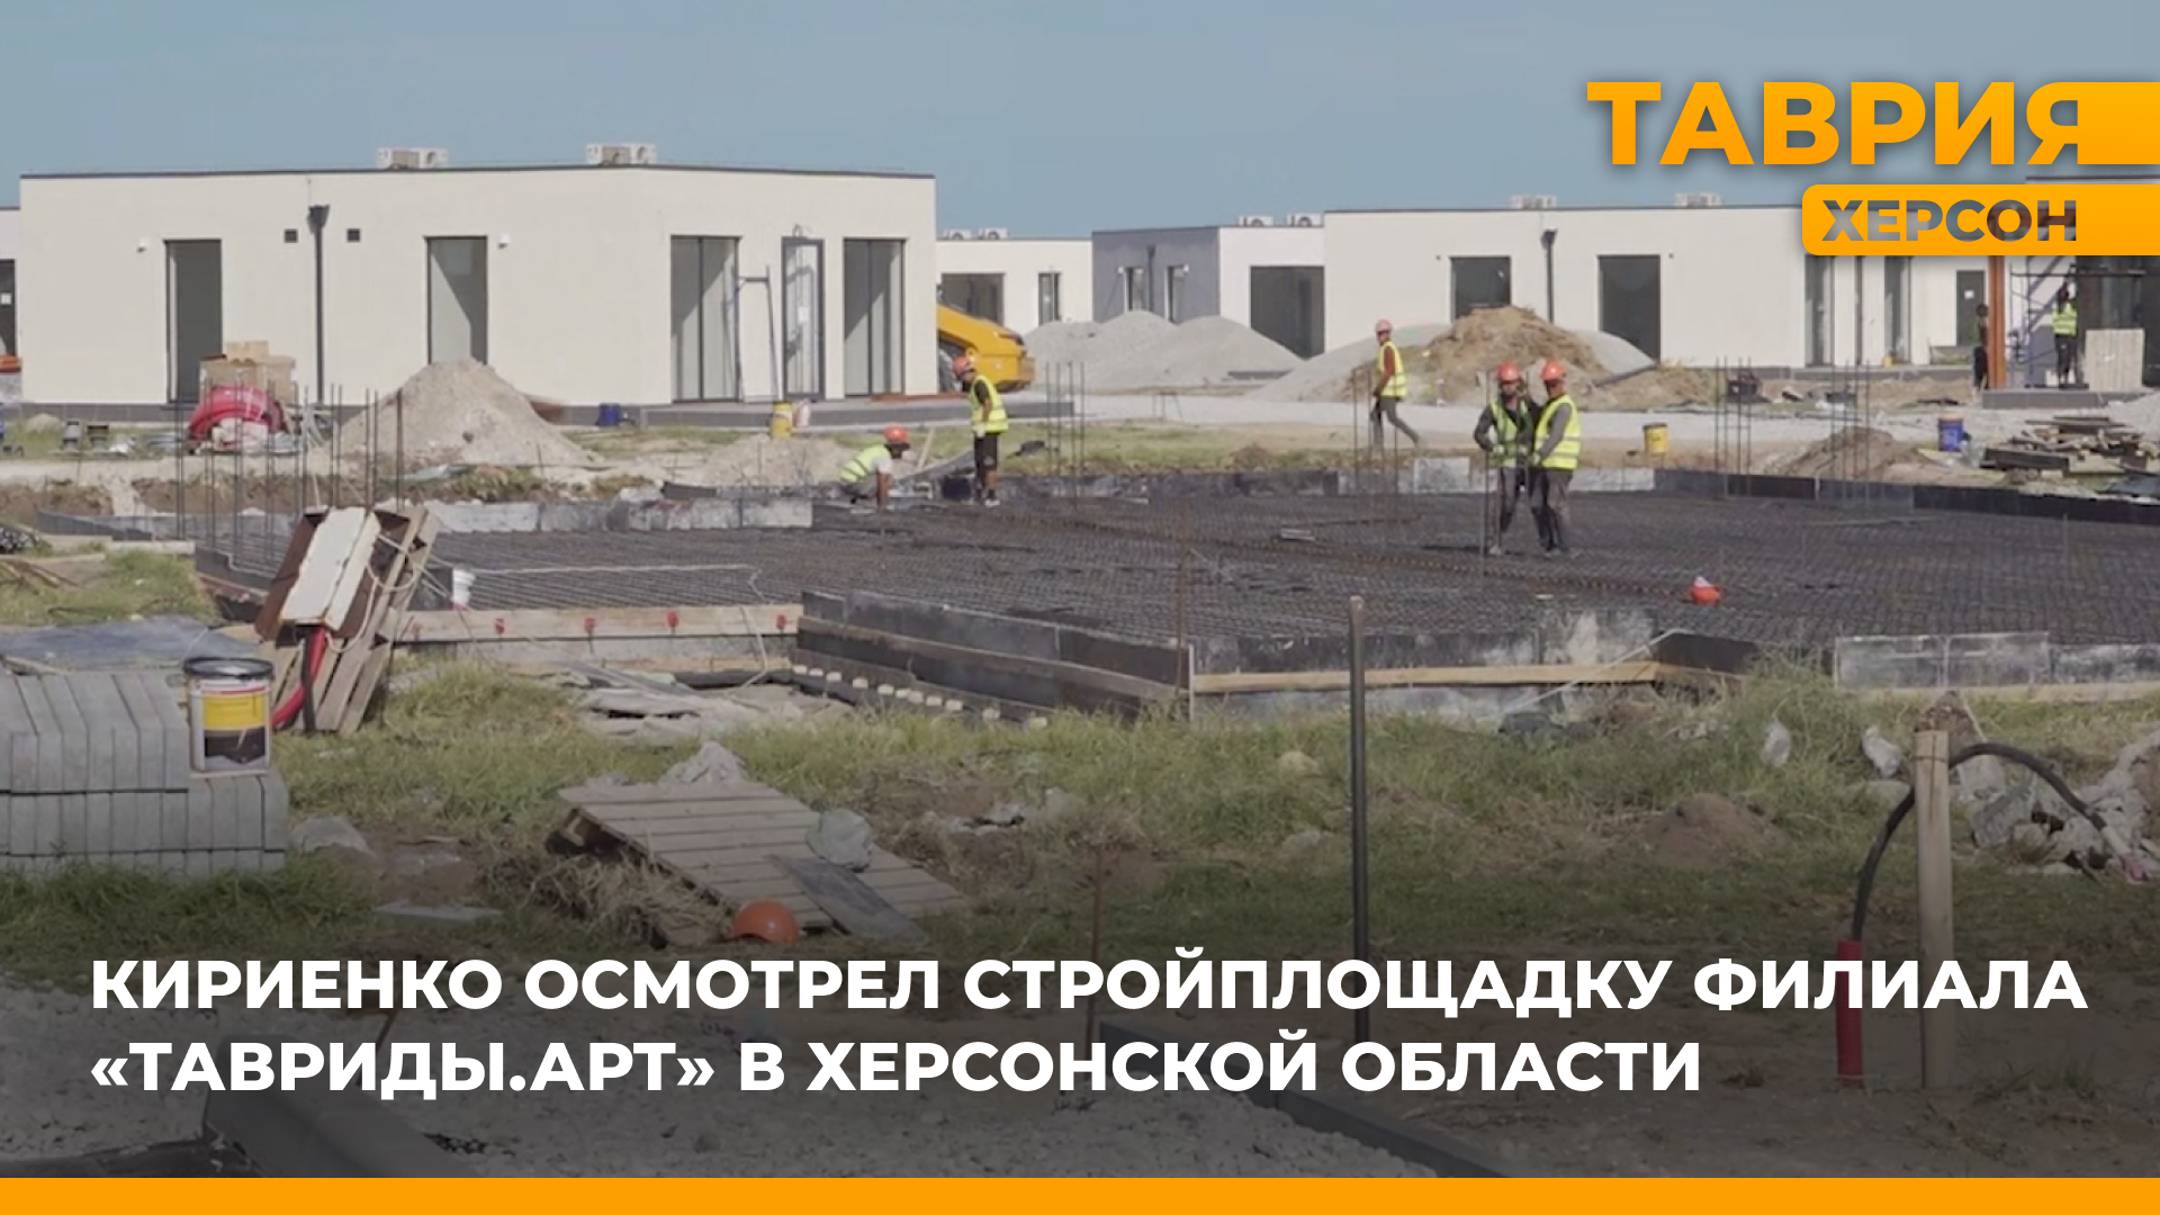 Сергей Кириенко осмотрел стройплощадку филиала "Тавриды.Арт" в Херсонской области